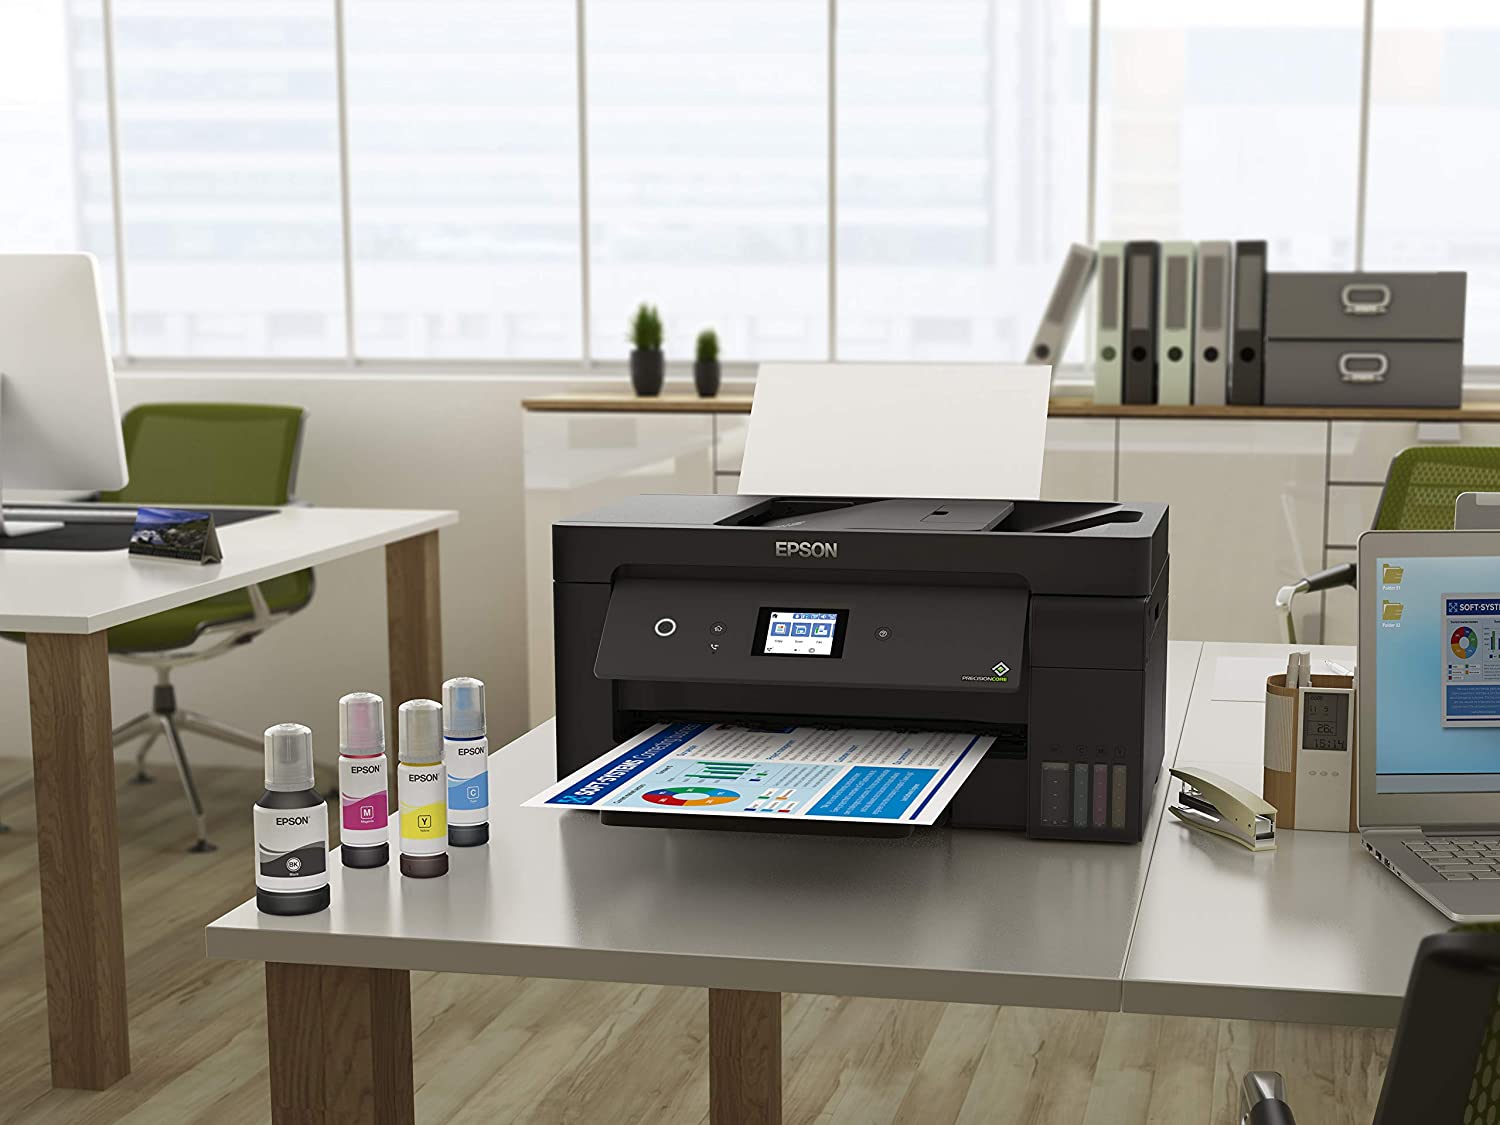 Epson EcoTank ET-15000 A3 Print Scan Copy Wi-Fi Printer, Black